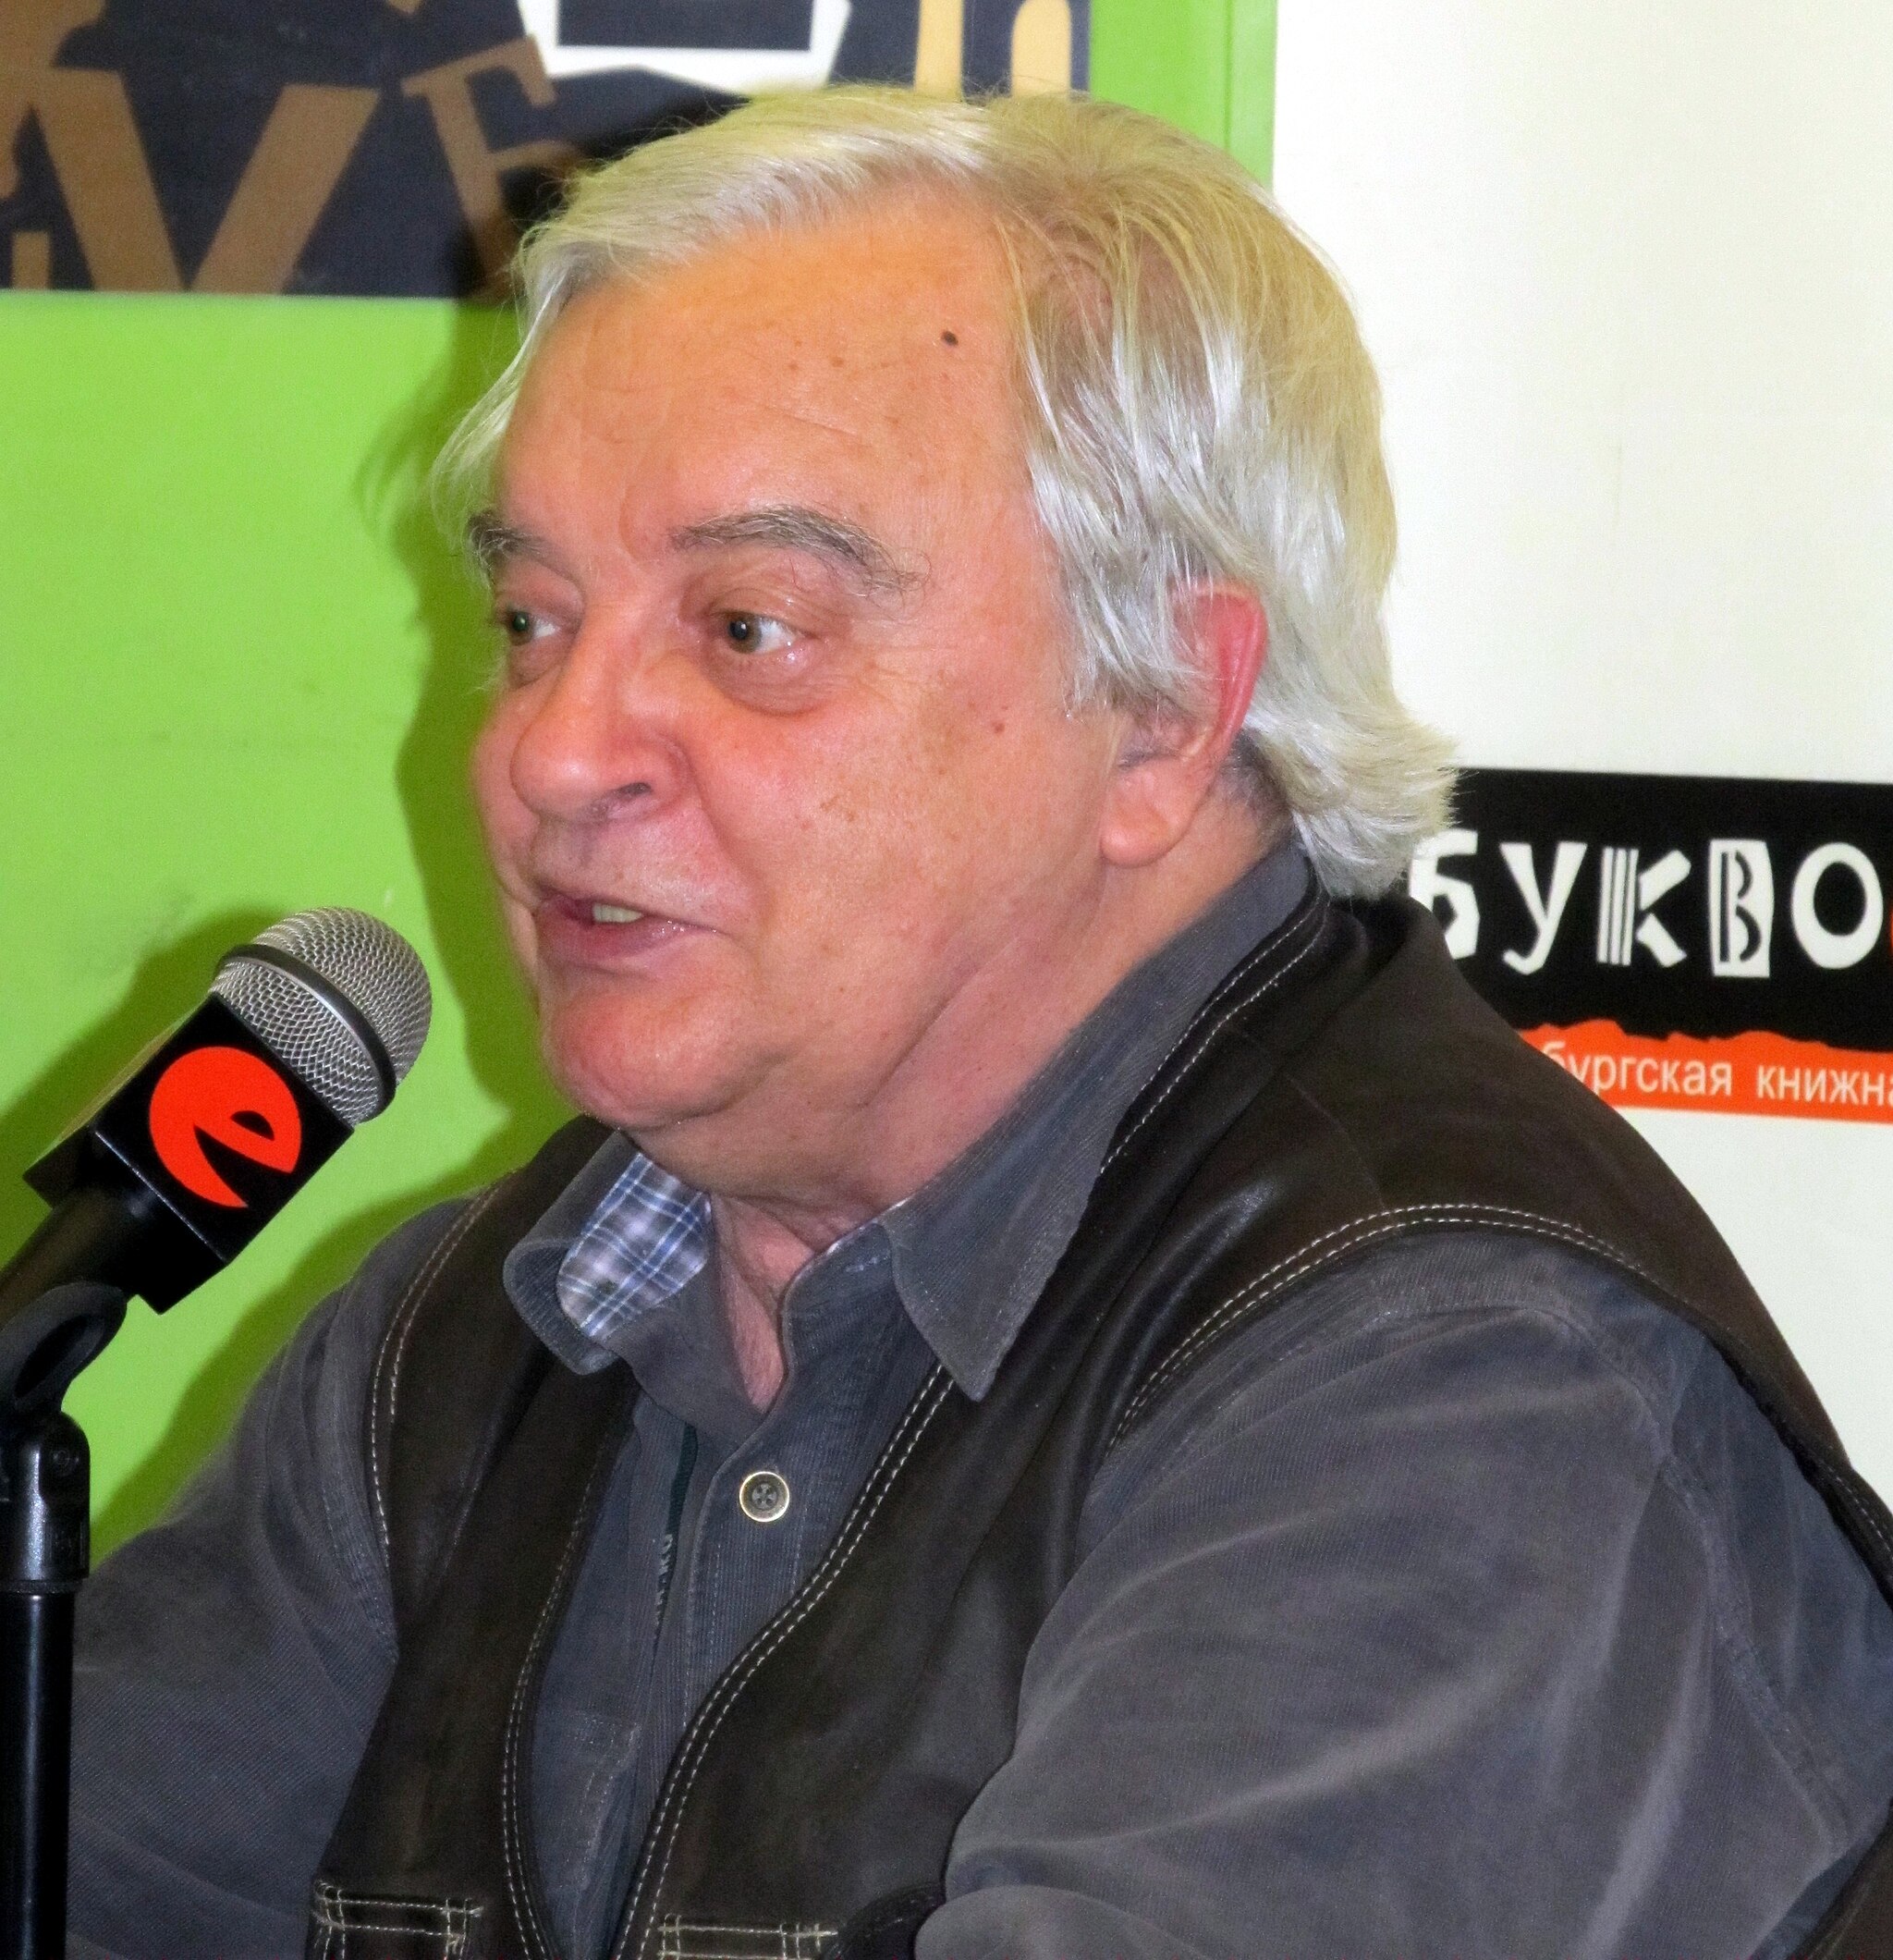 Aleksander Zhitinskiy 2011 01 17.jpg